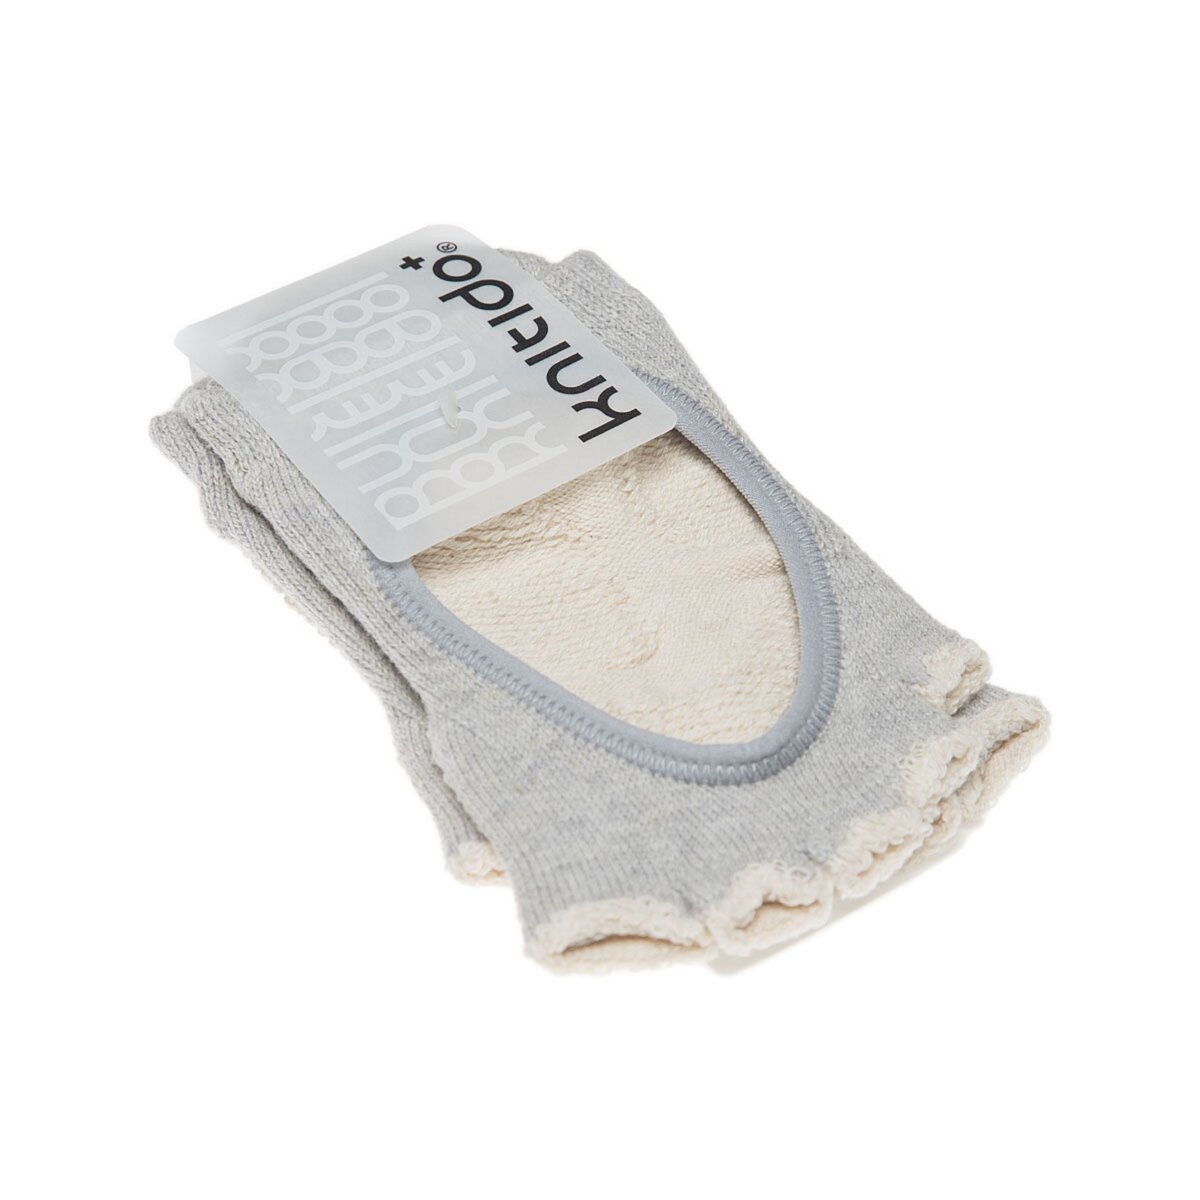  Chaussette Invisibles - 1 paire - Sans orteil - Anti dérapante - Yoga - Coton bio - Kokoro